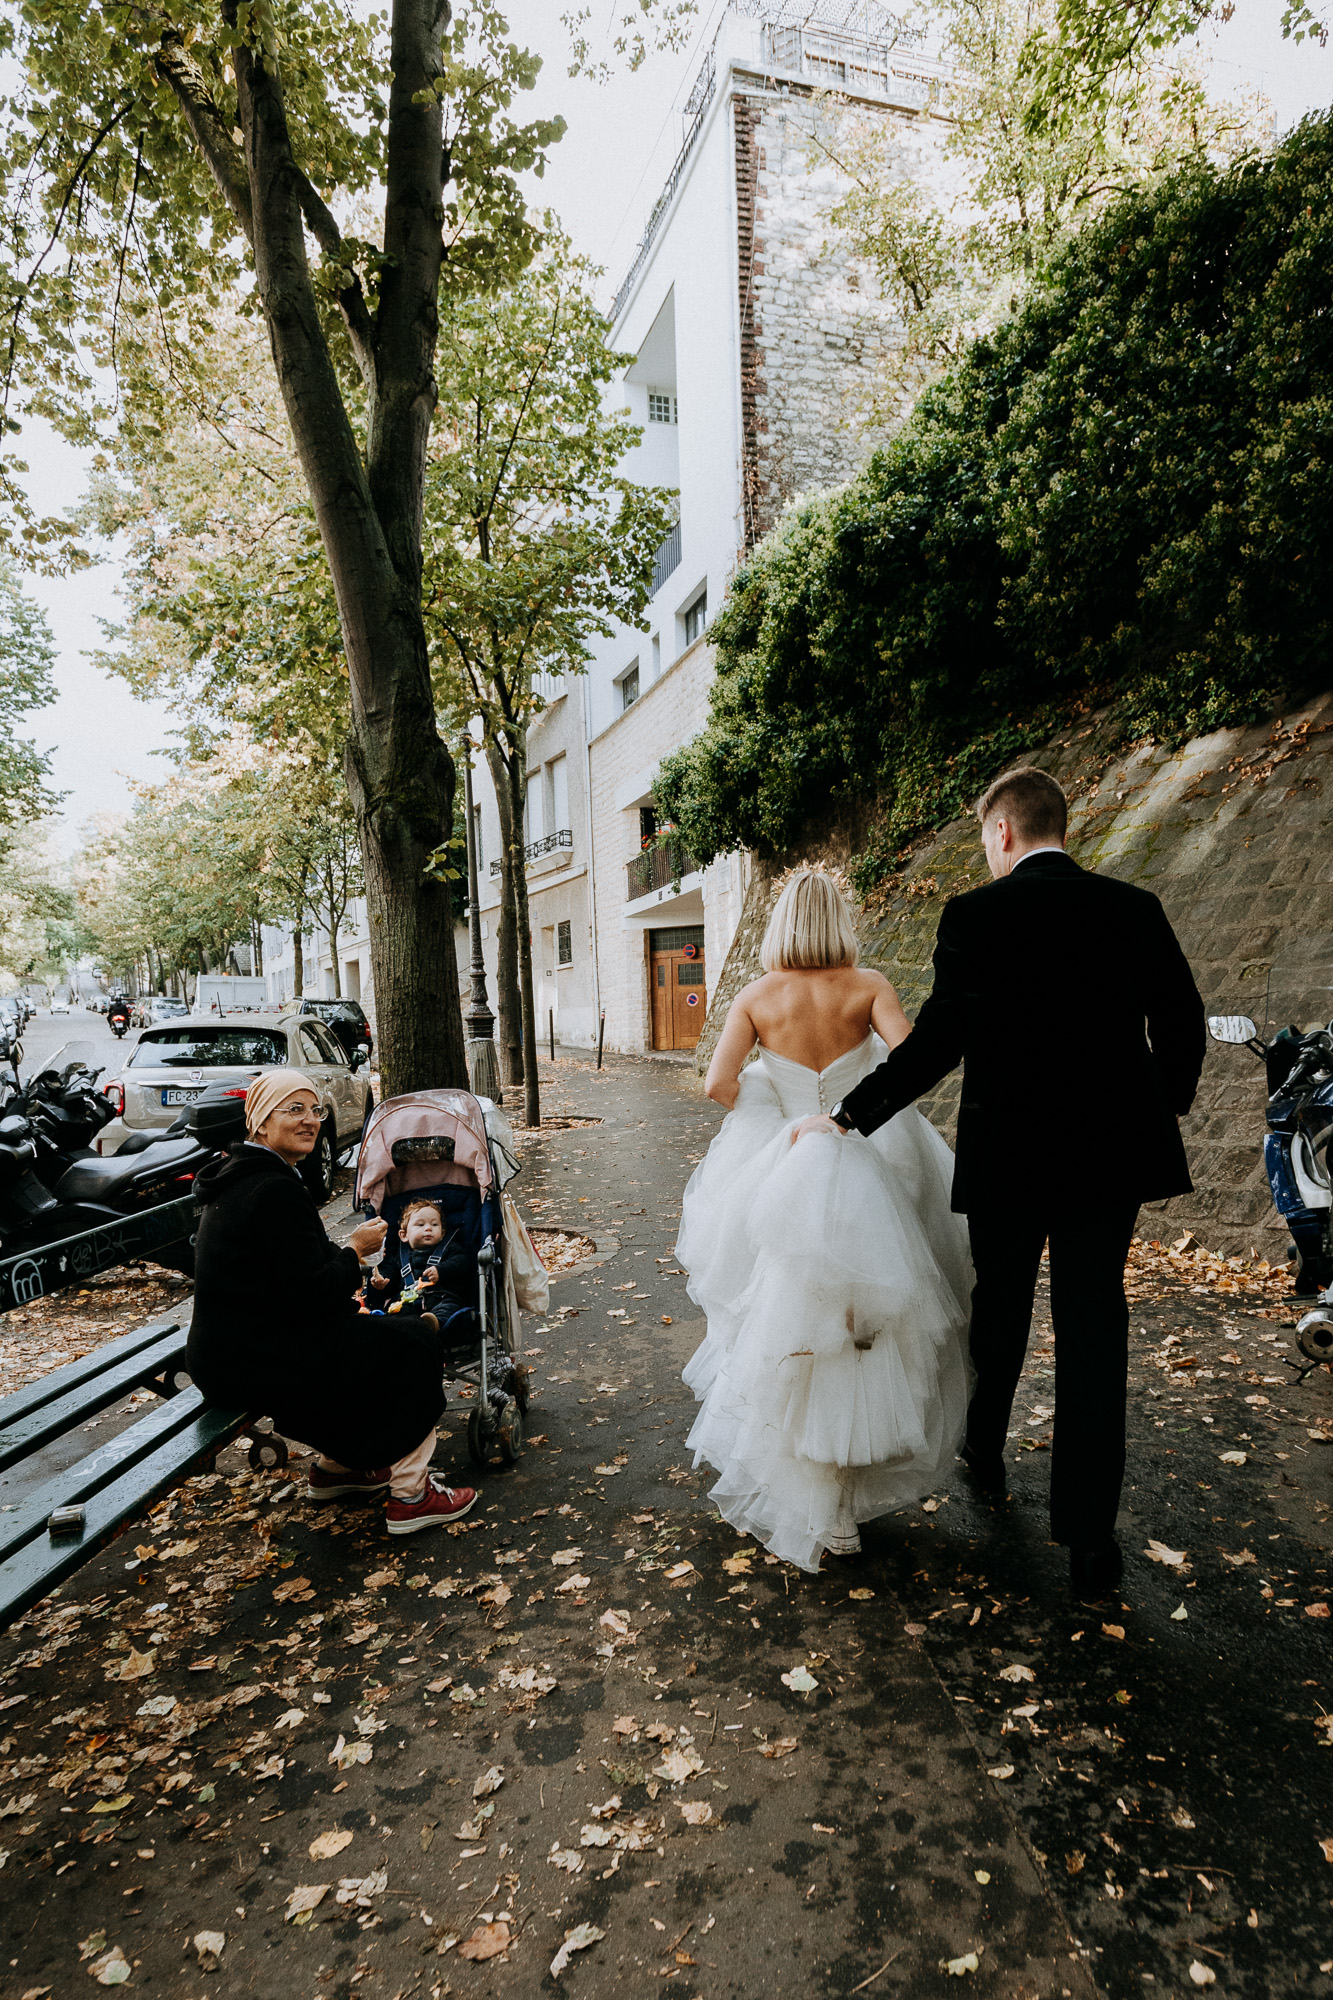 Une passante avenue Junot à Montmartre félicite les mariés sur leur union en les voyant passer devant elle